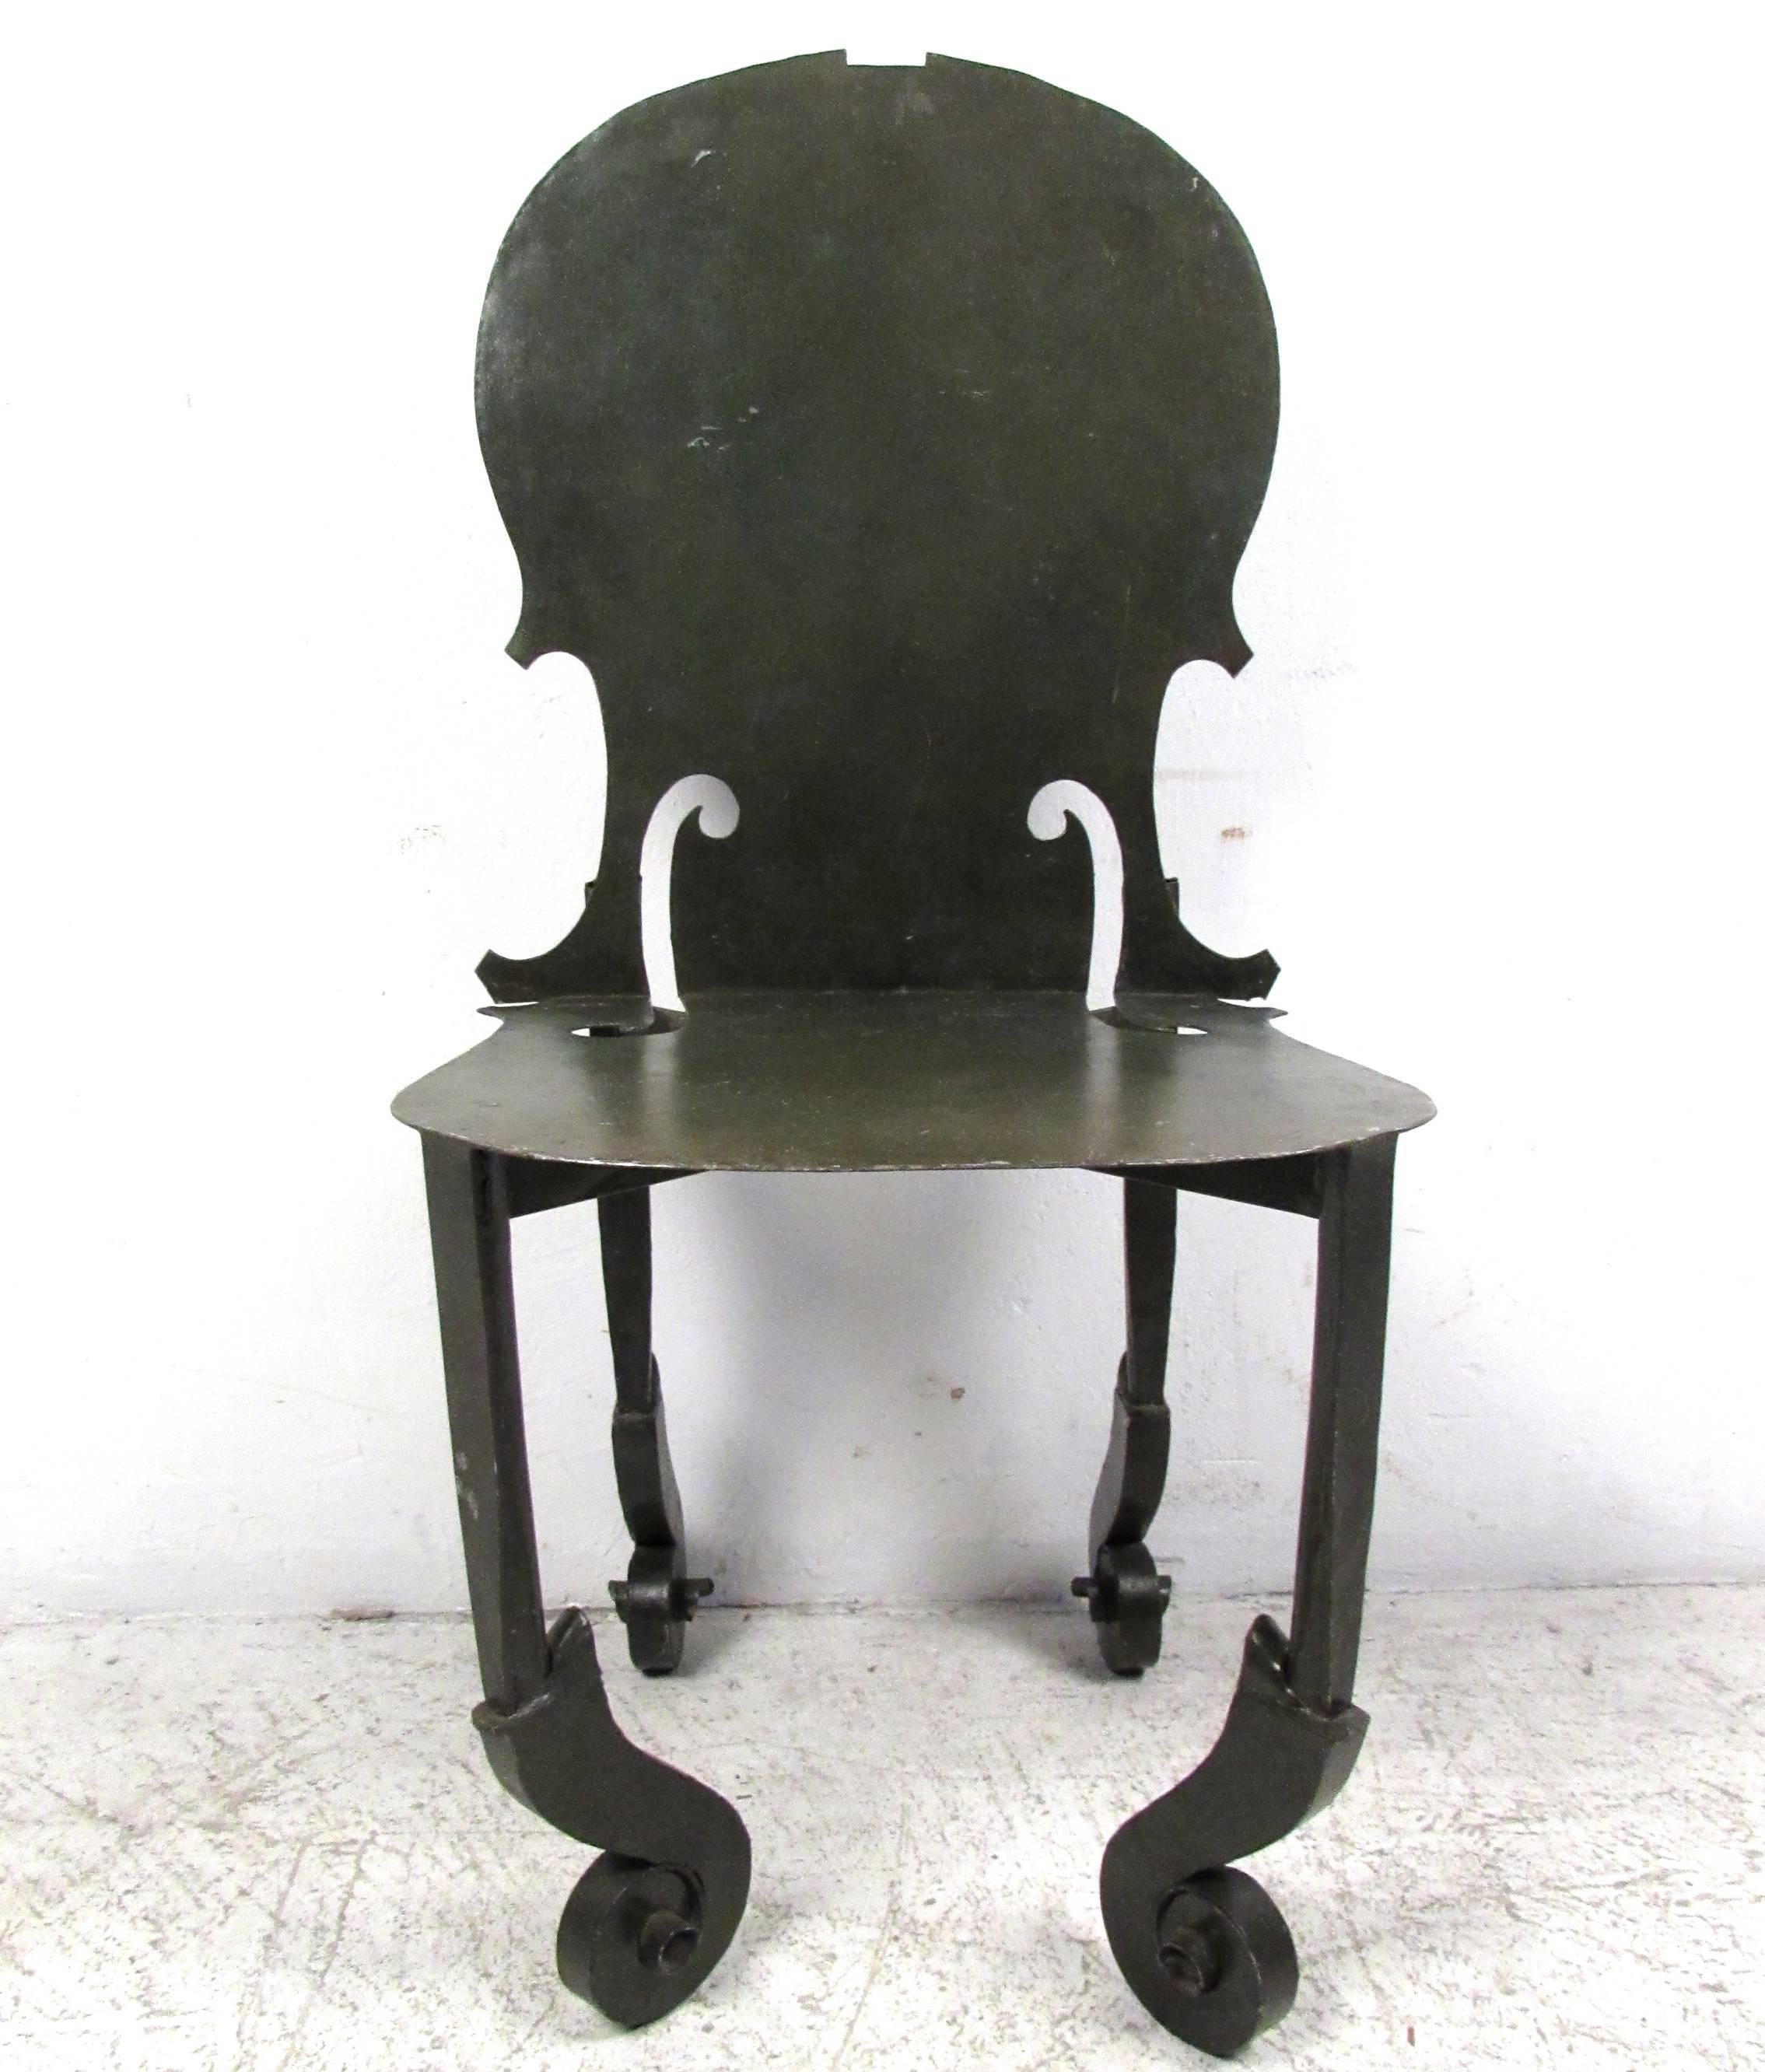 Cette chaise d'appoint vintage unique présente le design unique de Fernandez Arman, s'inspirant du violon. Les pieds uniques ressemblent à la tête de l'instrument, tandis que le siège et le dos présentent des découpes similaires au style du corps.